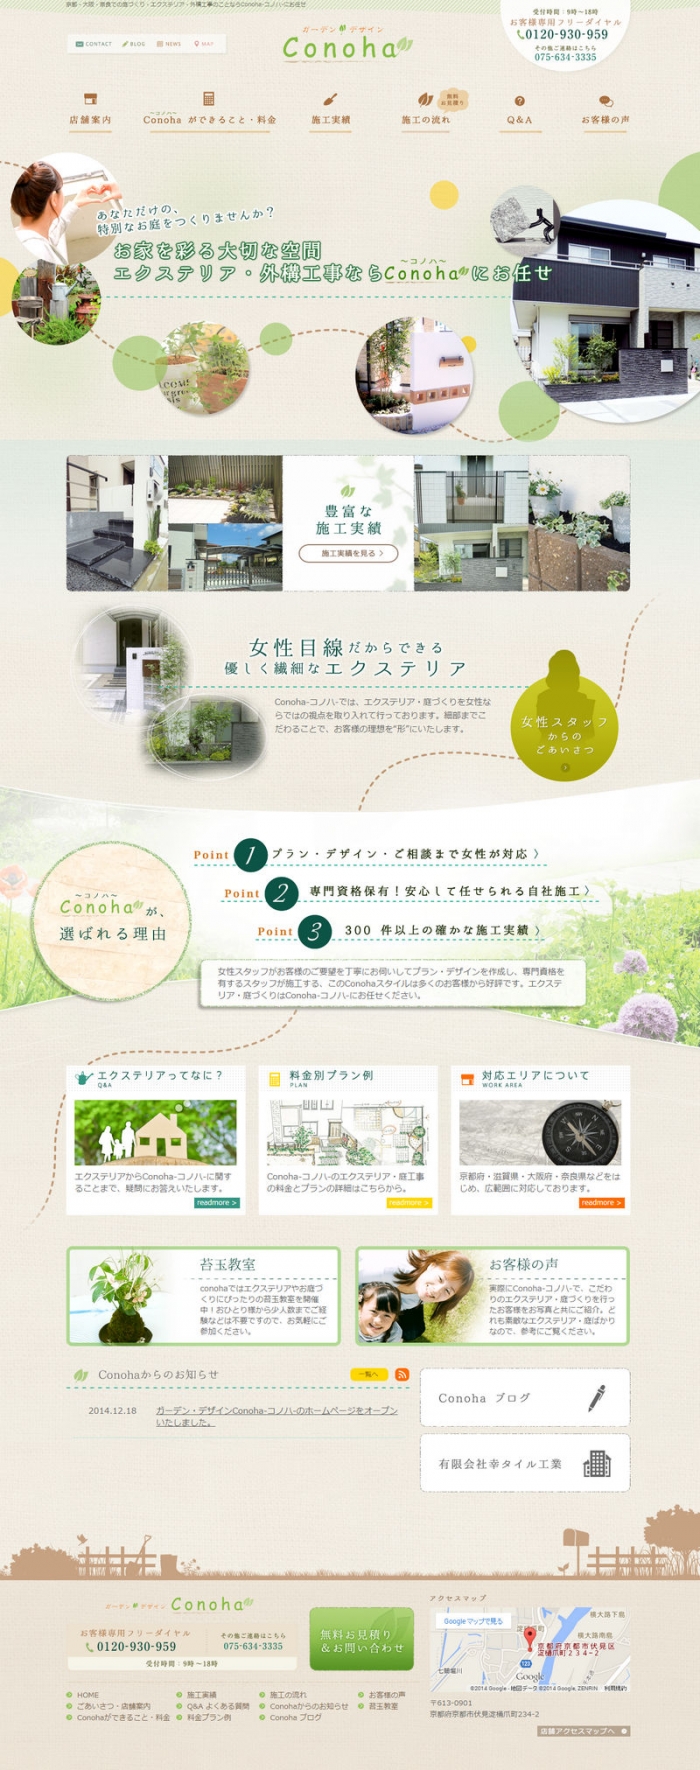 ガーデン・デザインConoha-コノハ-のホームページをオープンいたしました。